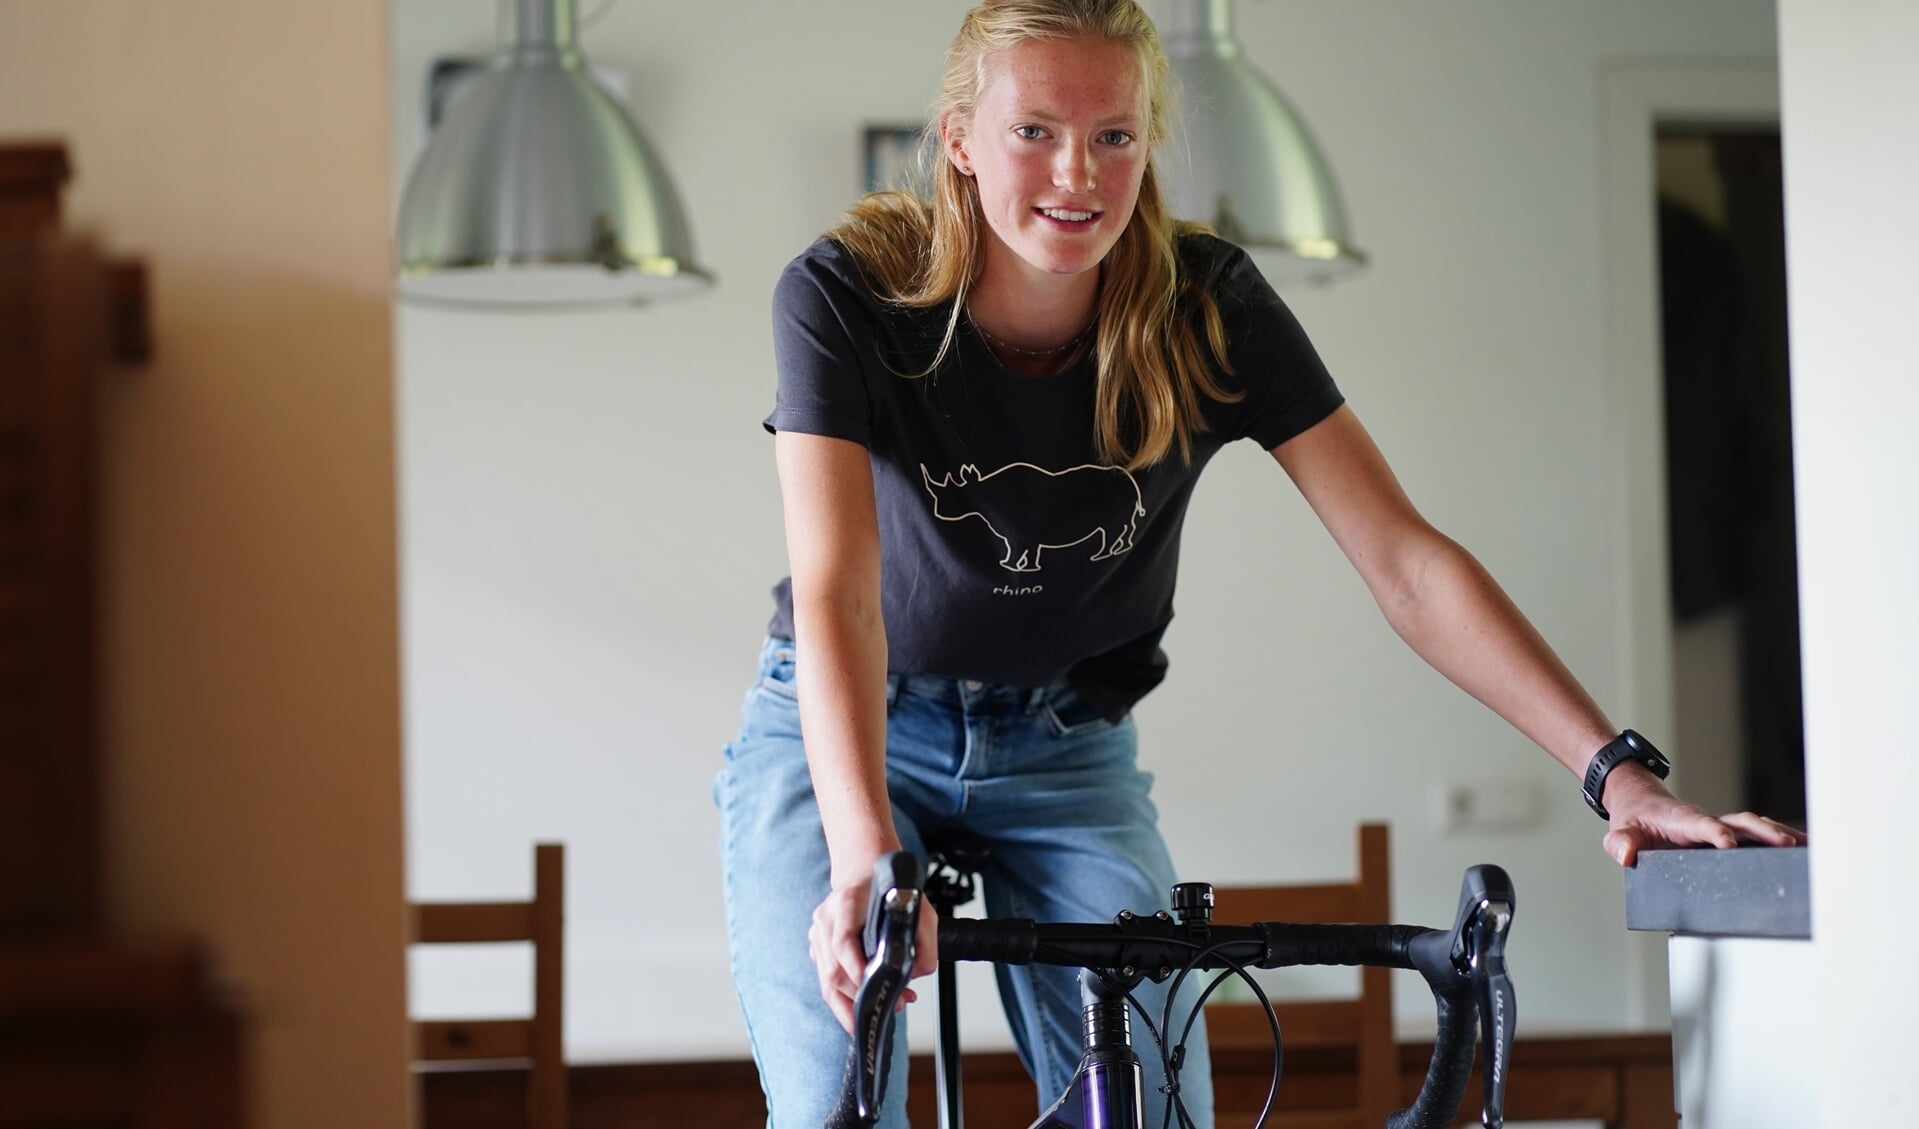 Famke is marathonschaatser. In de zomer doet ze onder meer aan wielrennen, om haar conditie te verbeteren. 